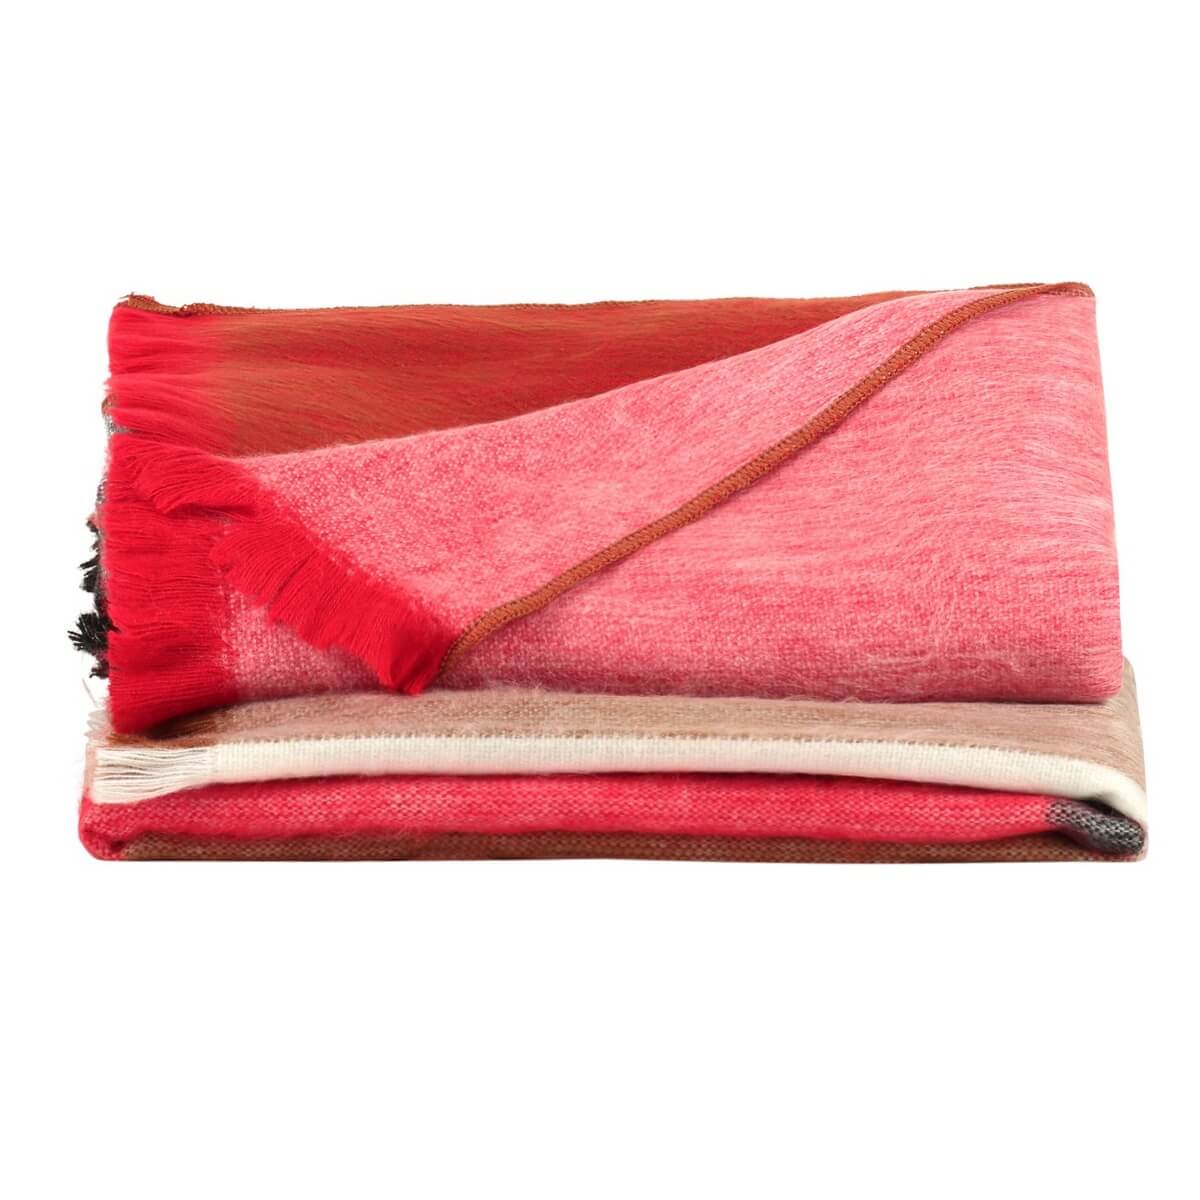 patura mare din lana de alpaca cu model in carouri in nuante rosu multicolor impaturita